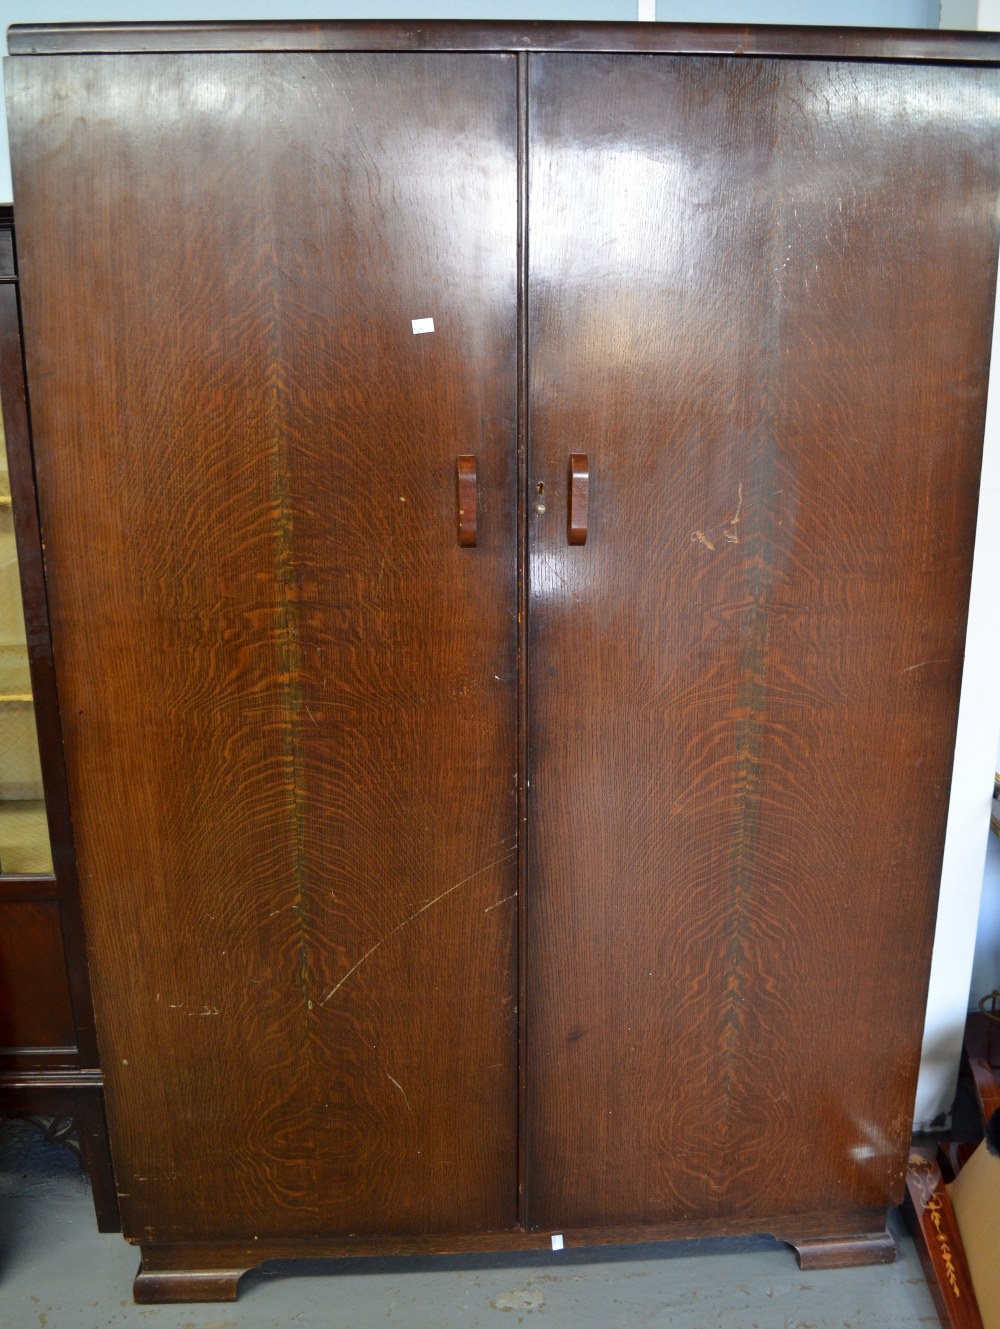 Oak two door wardrobe revealing fitted slides 72 x 48 x 20in. (183 x 122 x 51cm)